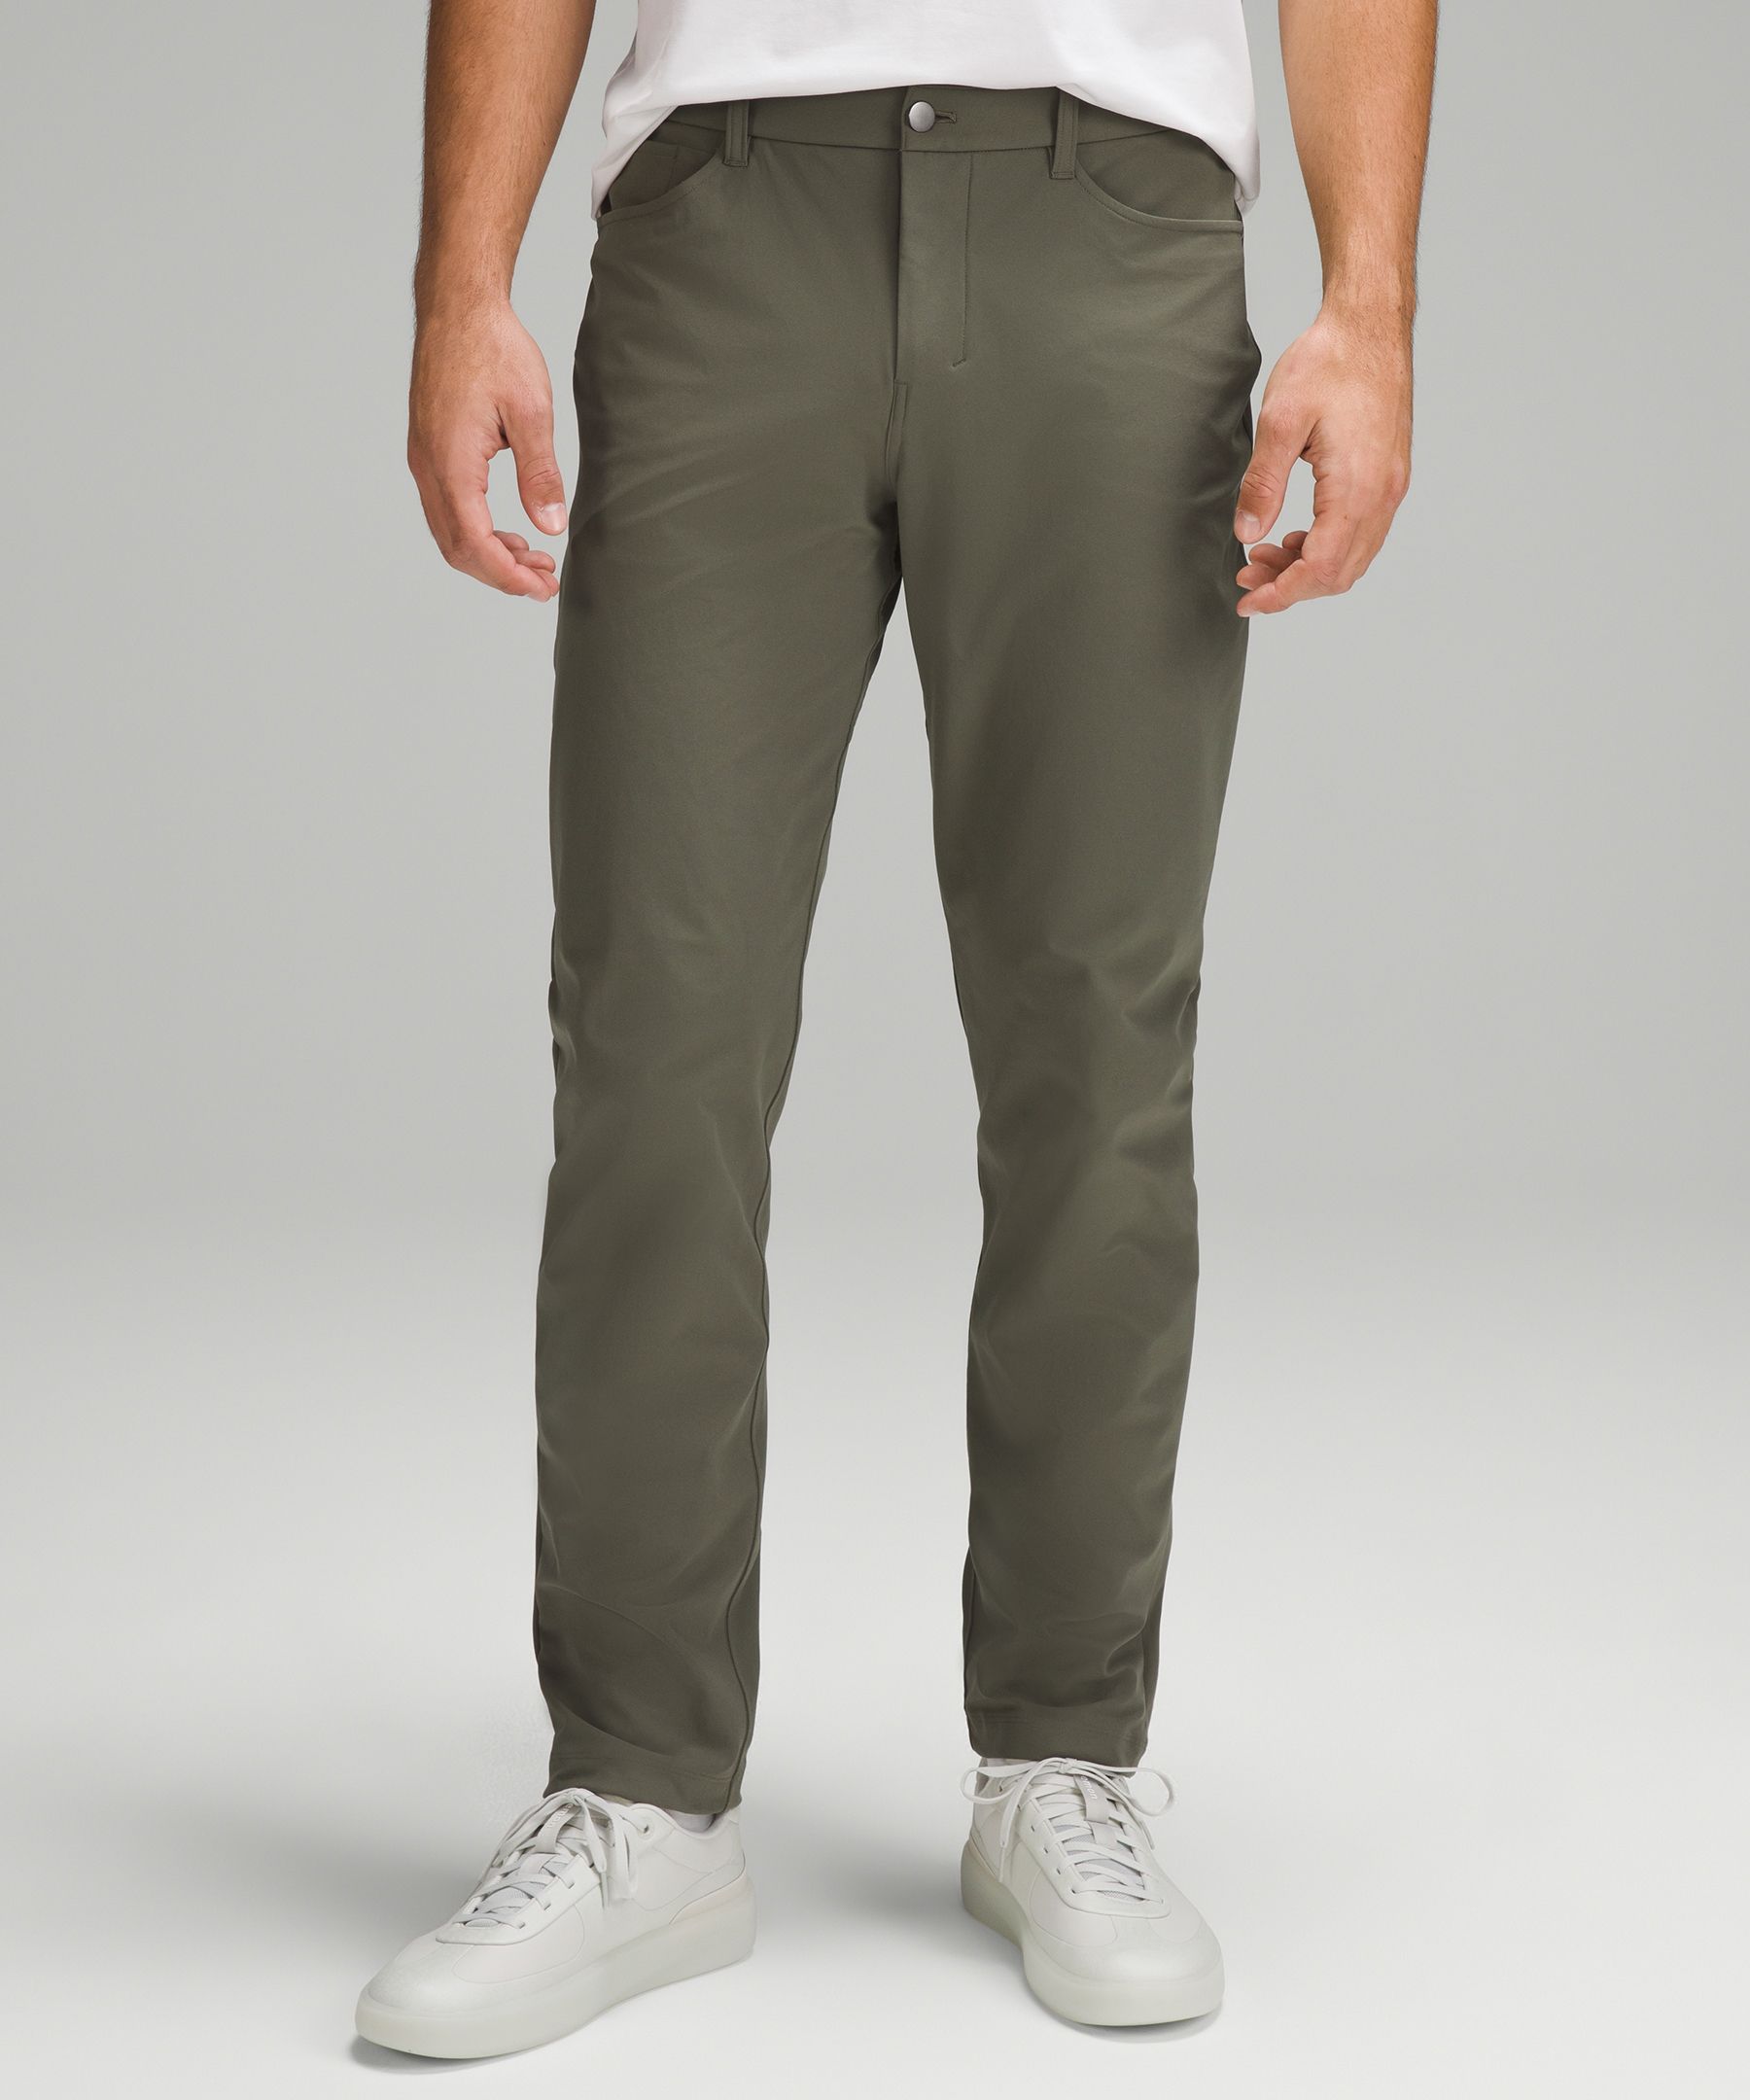 Lululemon athletica ABC Classic-Fit 5 Pocket Pant 32L *Utilitech, Men's  Trousers